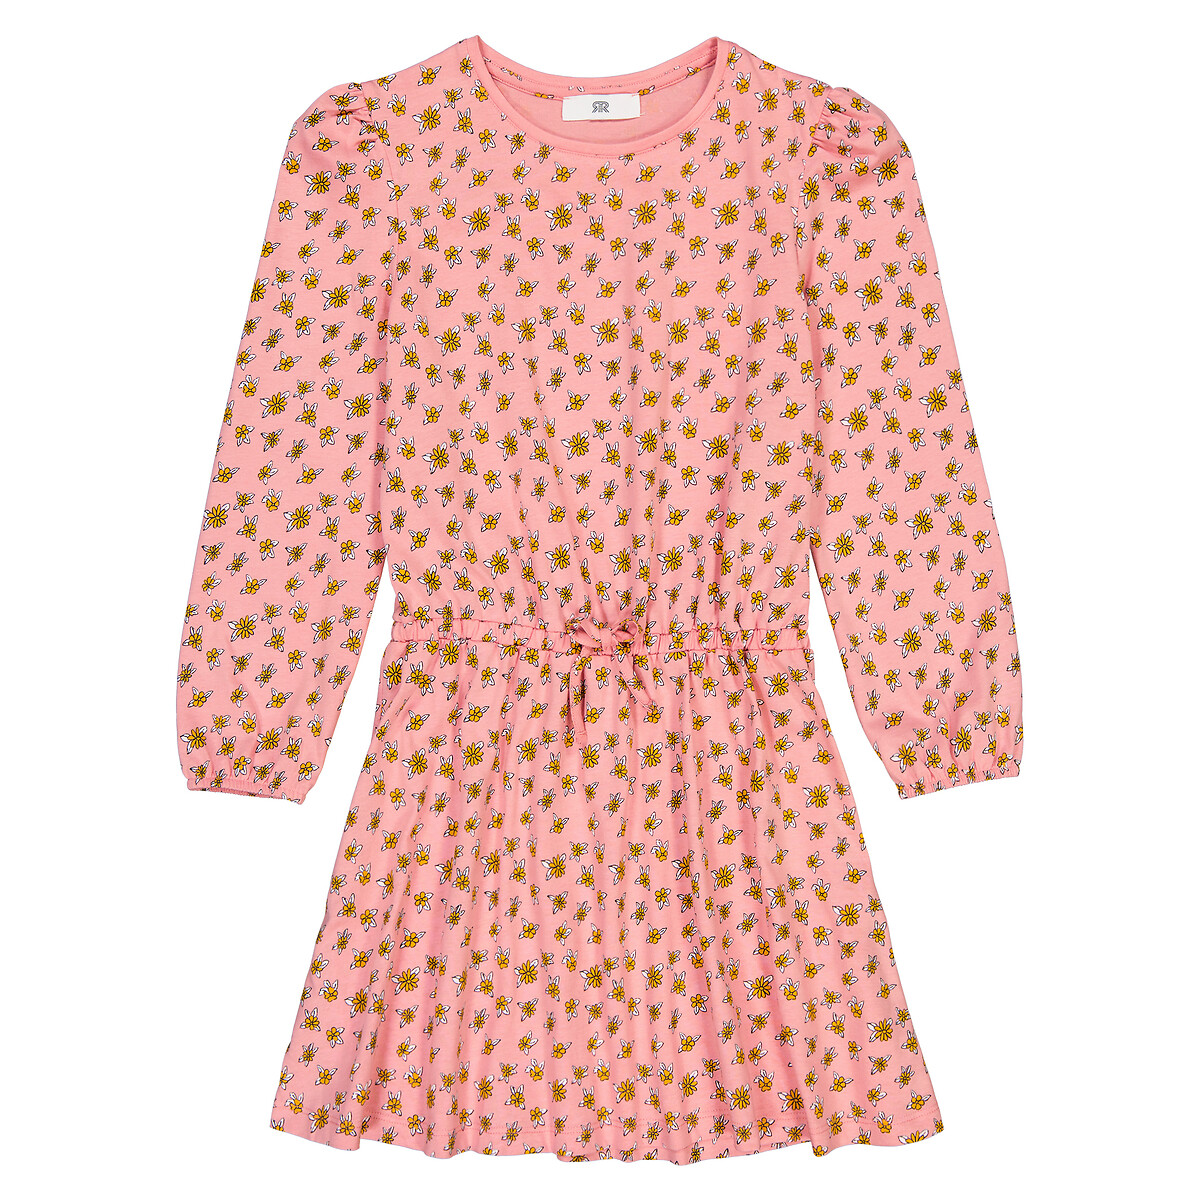 Платье С длинными рукавами и принтом цветы 3 года - 94 см розовый LaRedoute, размер 3 года - 94 см - фото 3